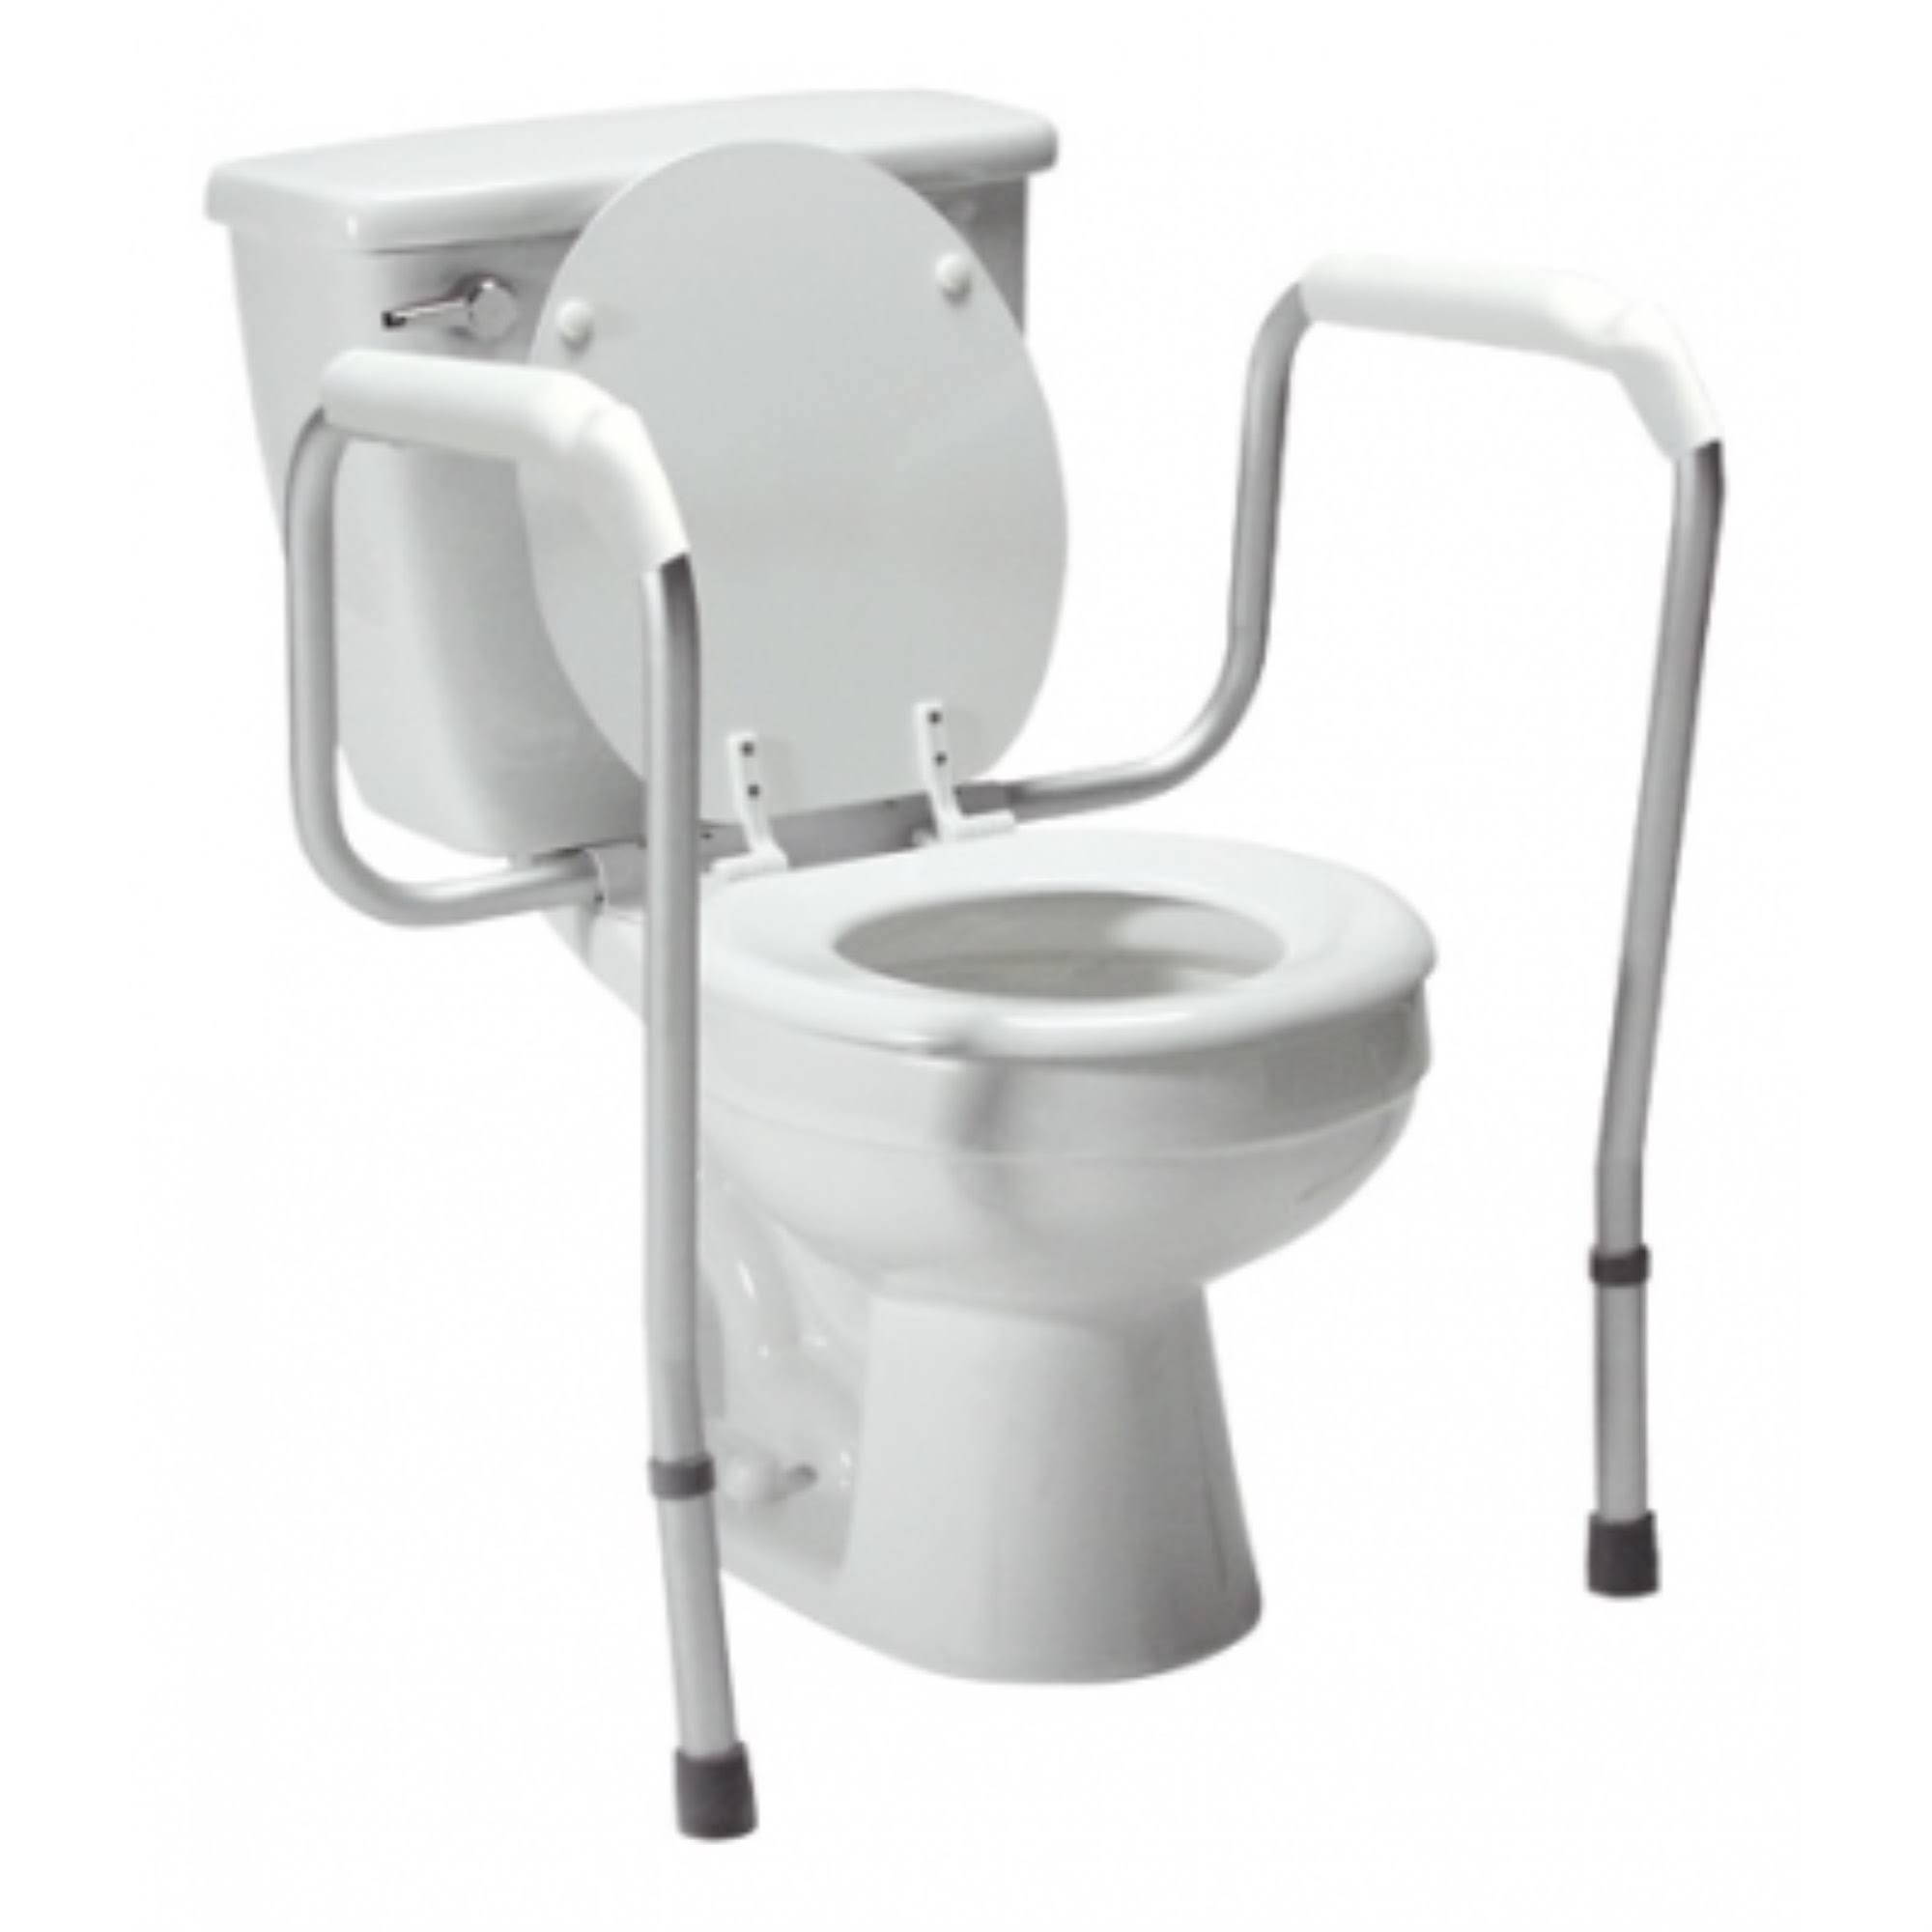 Toilet Safety Rails Versaframe Lumex,Retail